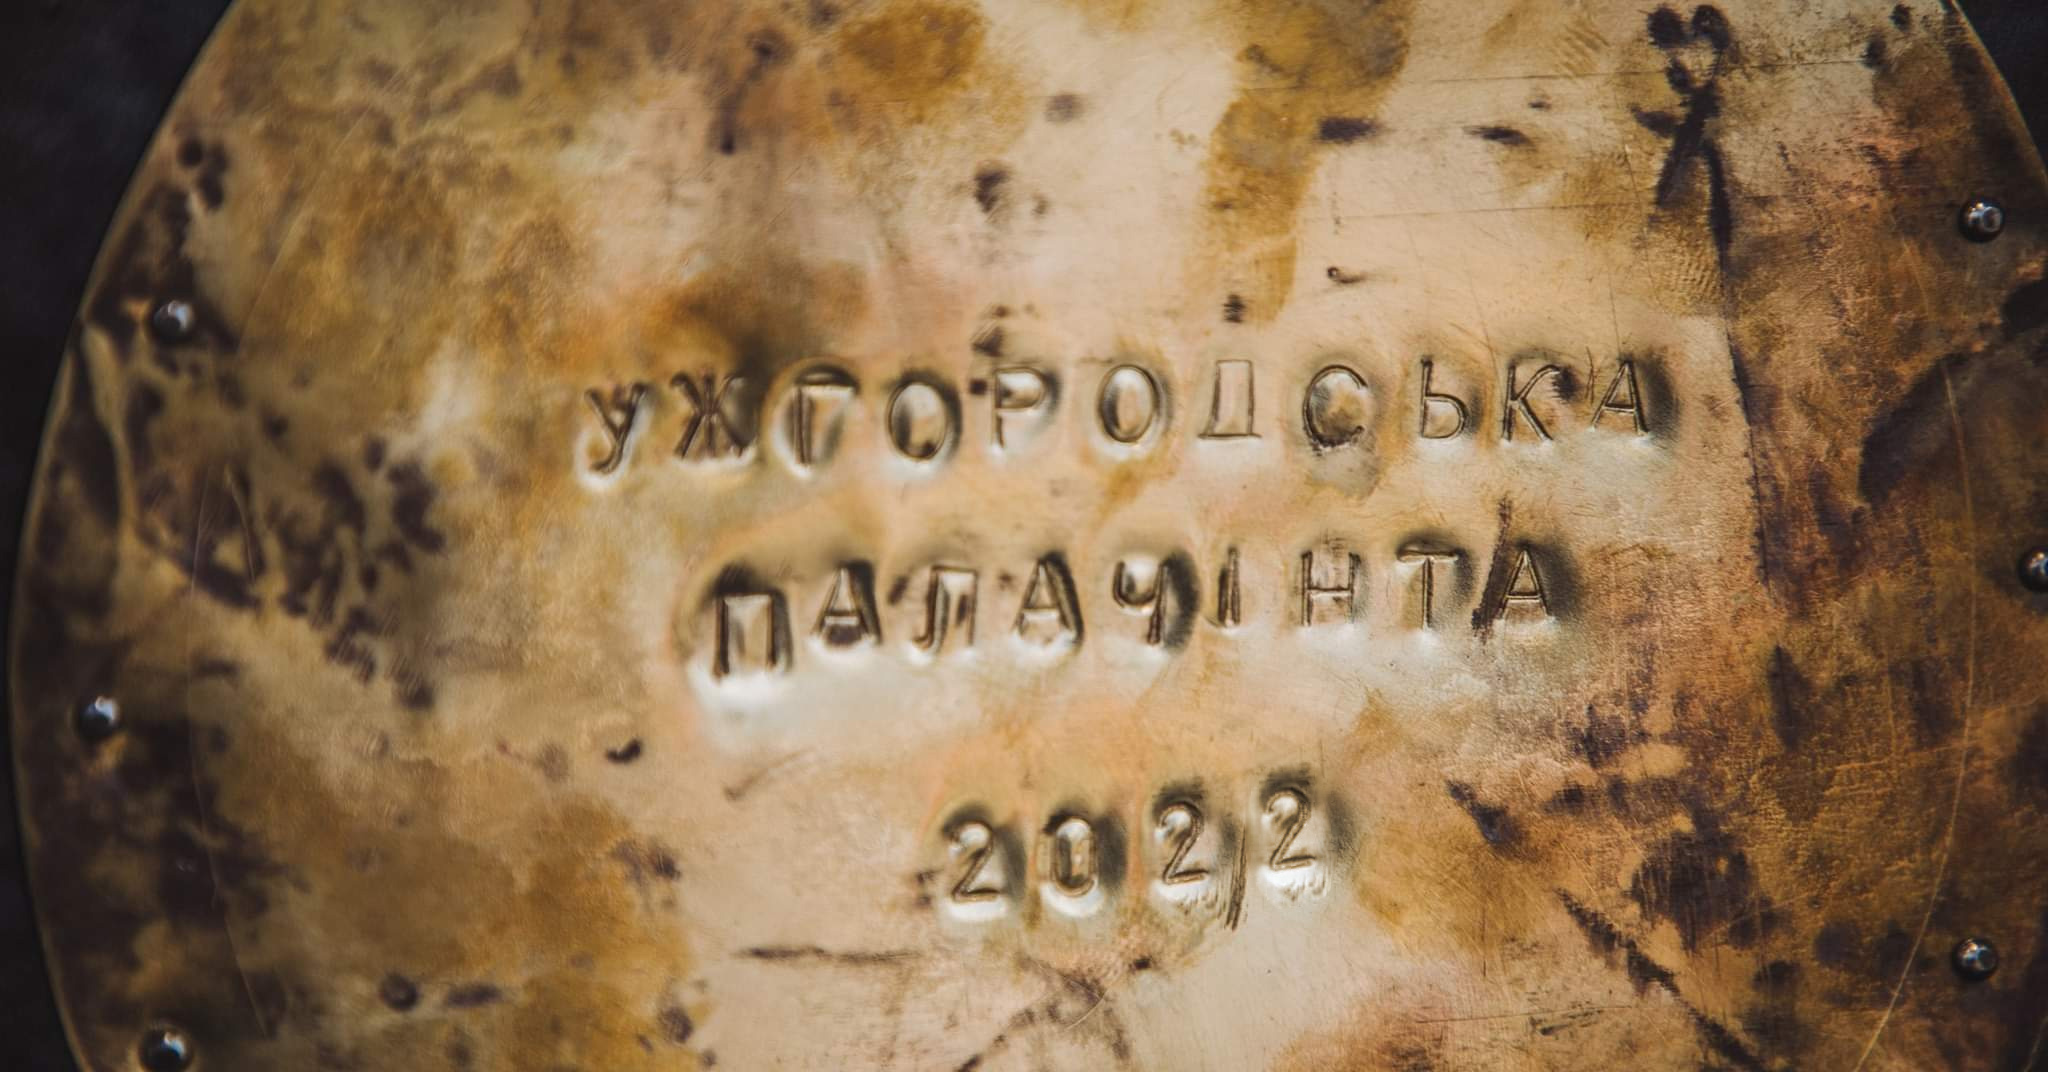 "Ужгородська палачінта-2022" пригощатиме млинцями в лютому у Боздоському парку